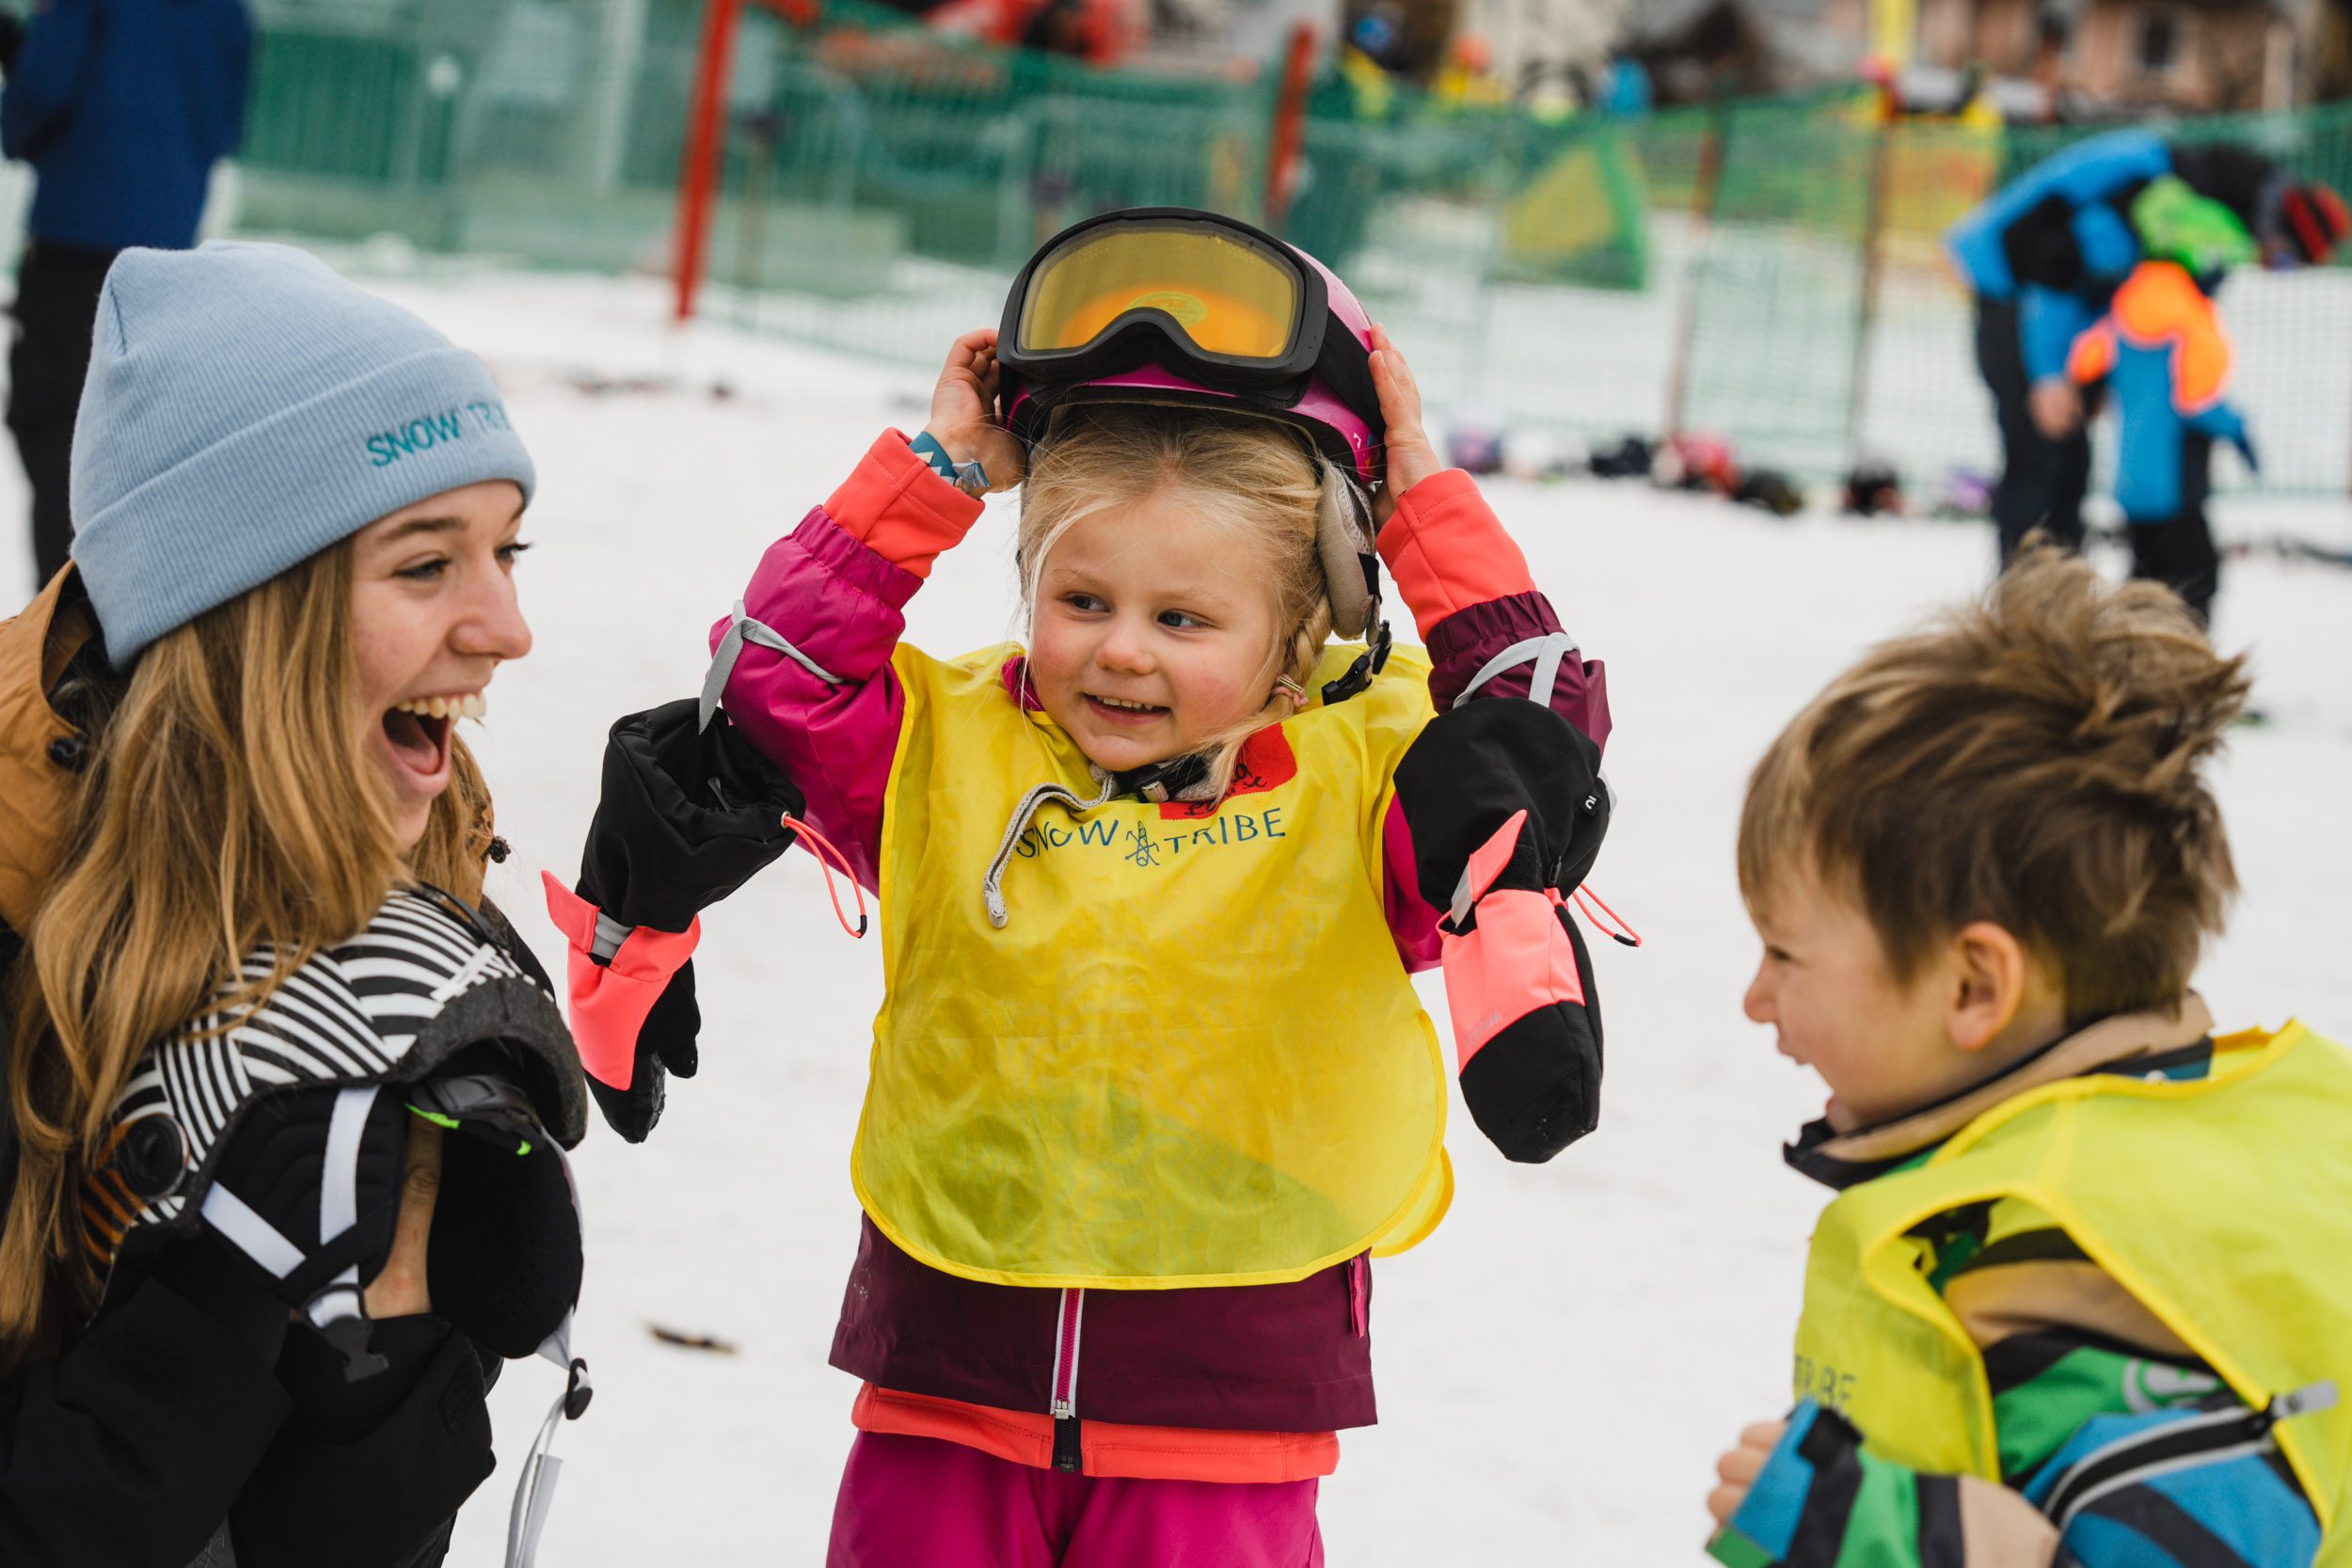 Skivakantie met kinderen: Frankrijk, Italië of Oostenrijk